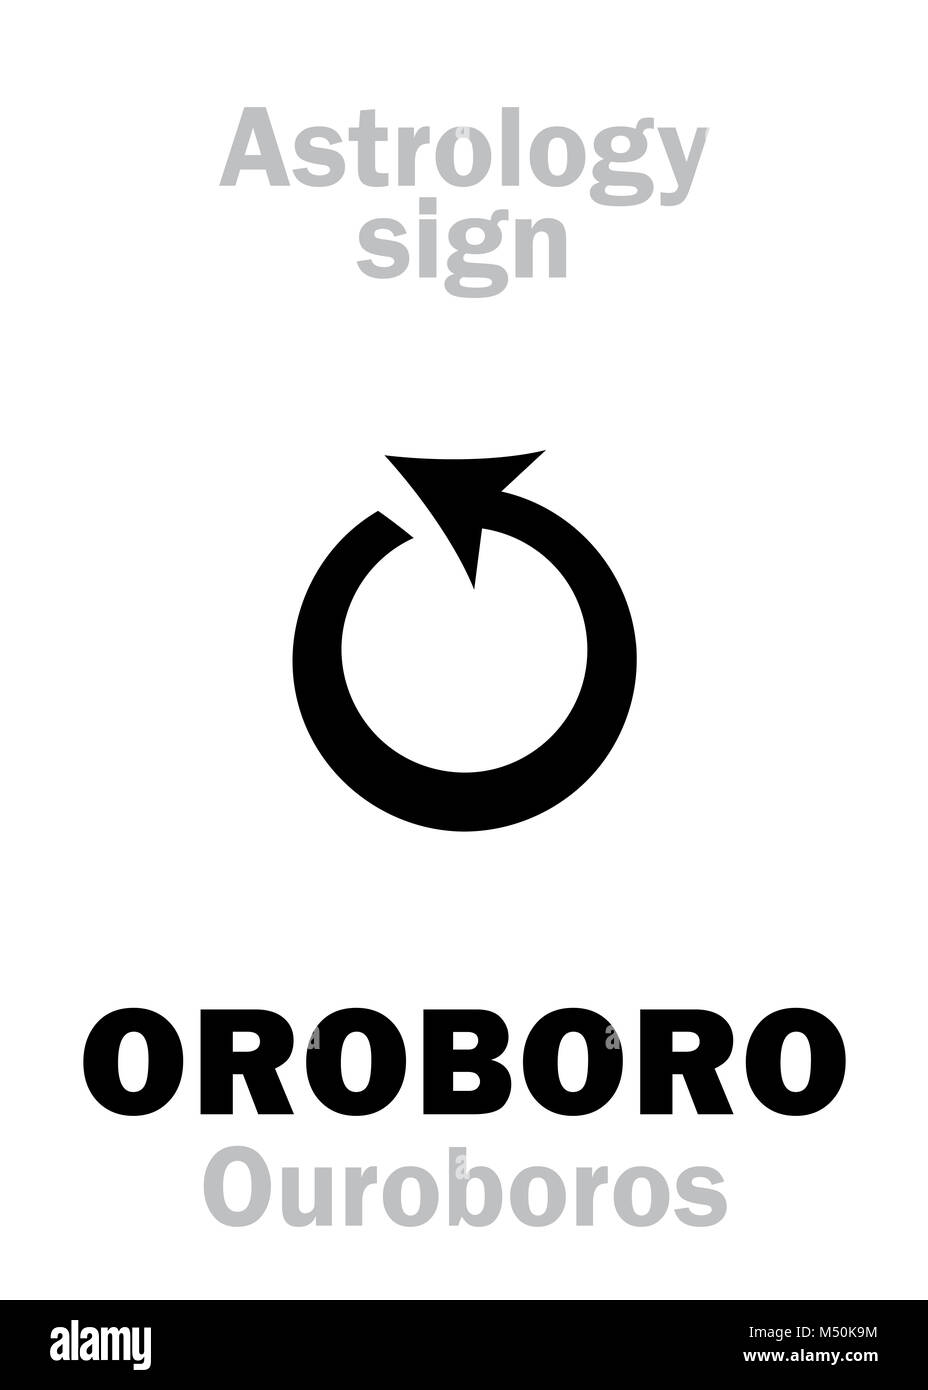 Astrology: OROBORO (Ouroboros) Stock Photo